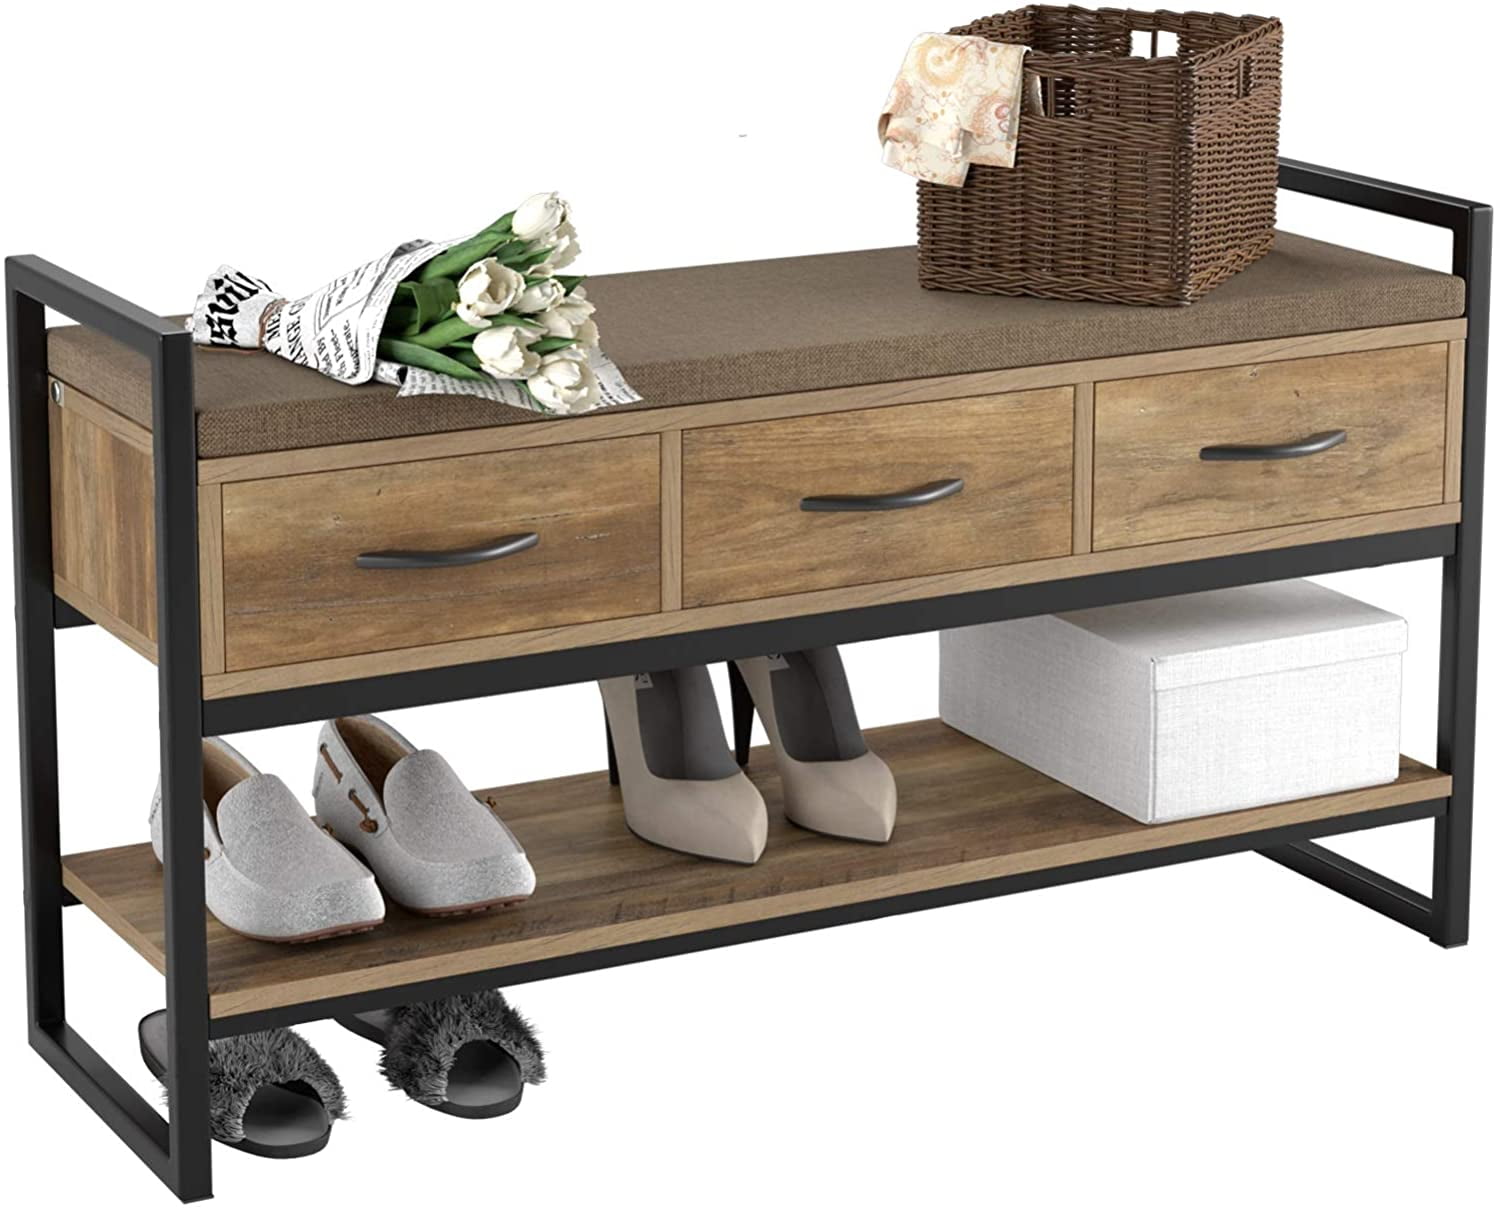 Pengruita Shoe Rack Bench 2-Tier Wood Heavy Duty Shoe Organizer Shelf for Entryway Living Room Bedroom, Brown